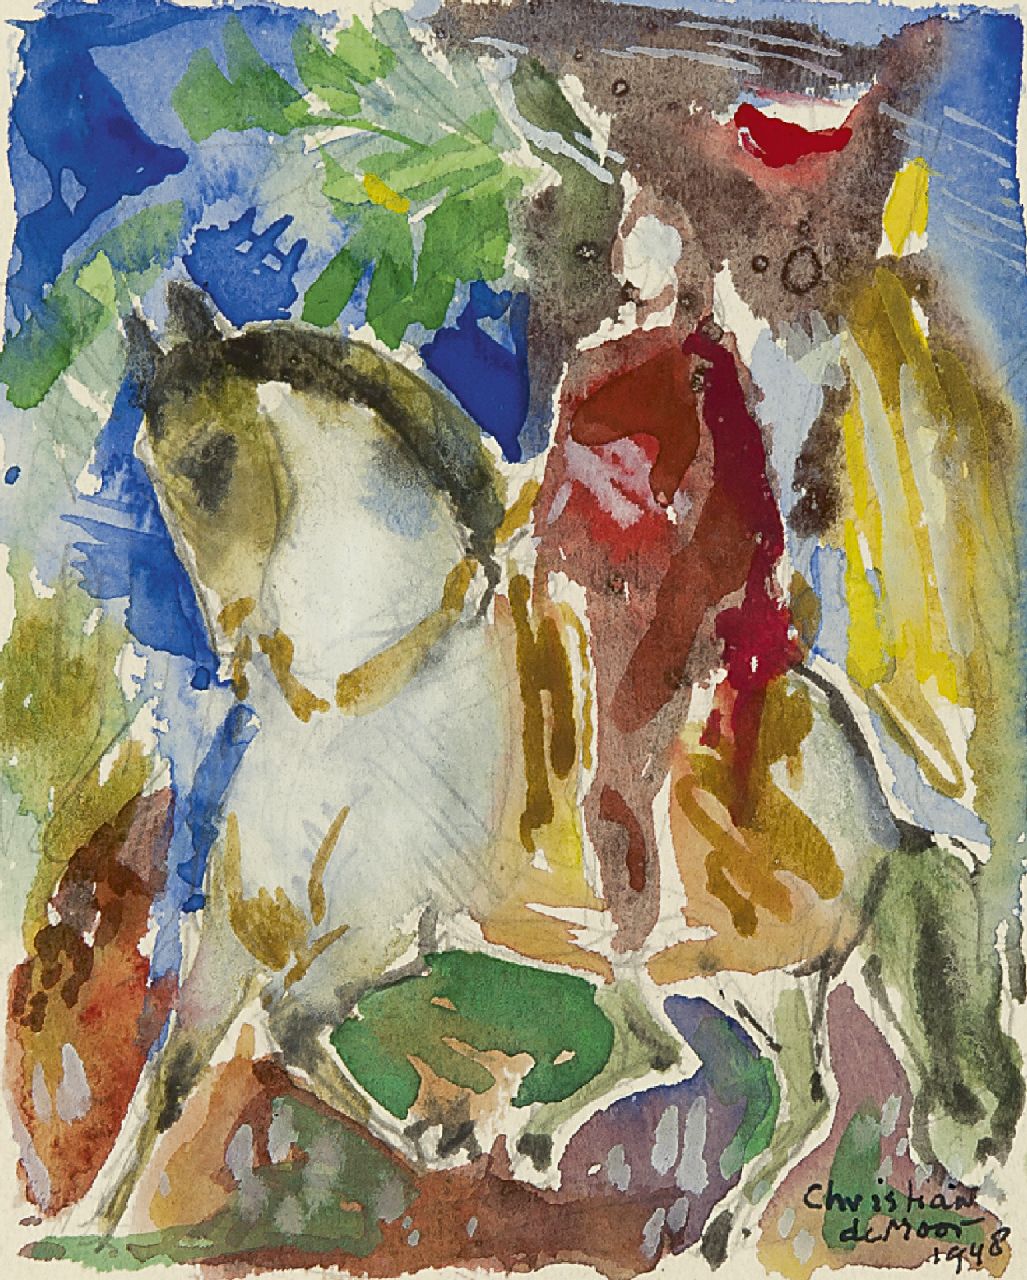 Moor C.N.E. de | Christiaan Nicolaas Everard 'Chris' de Moor, Ruiter te paard, aquarel op papier 14,0 x 11,3 cm, gesigneerd rechtsonder en gedateerd 1948